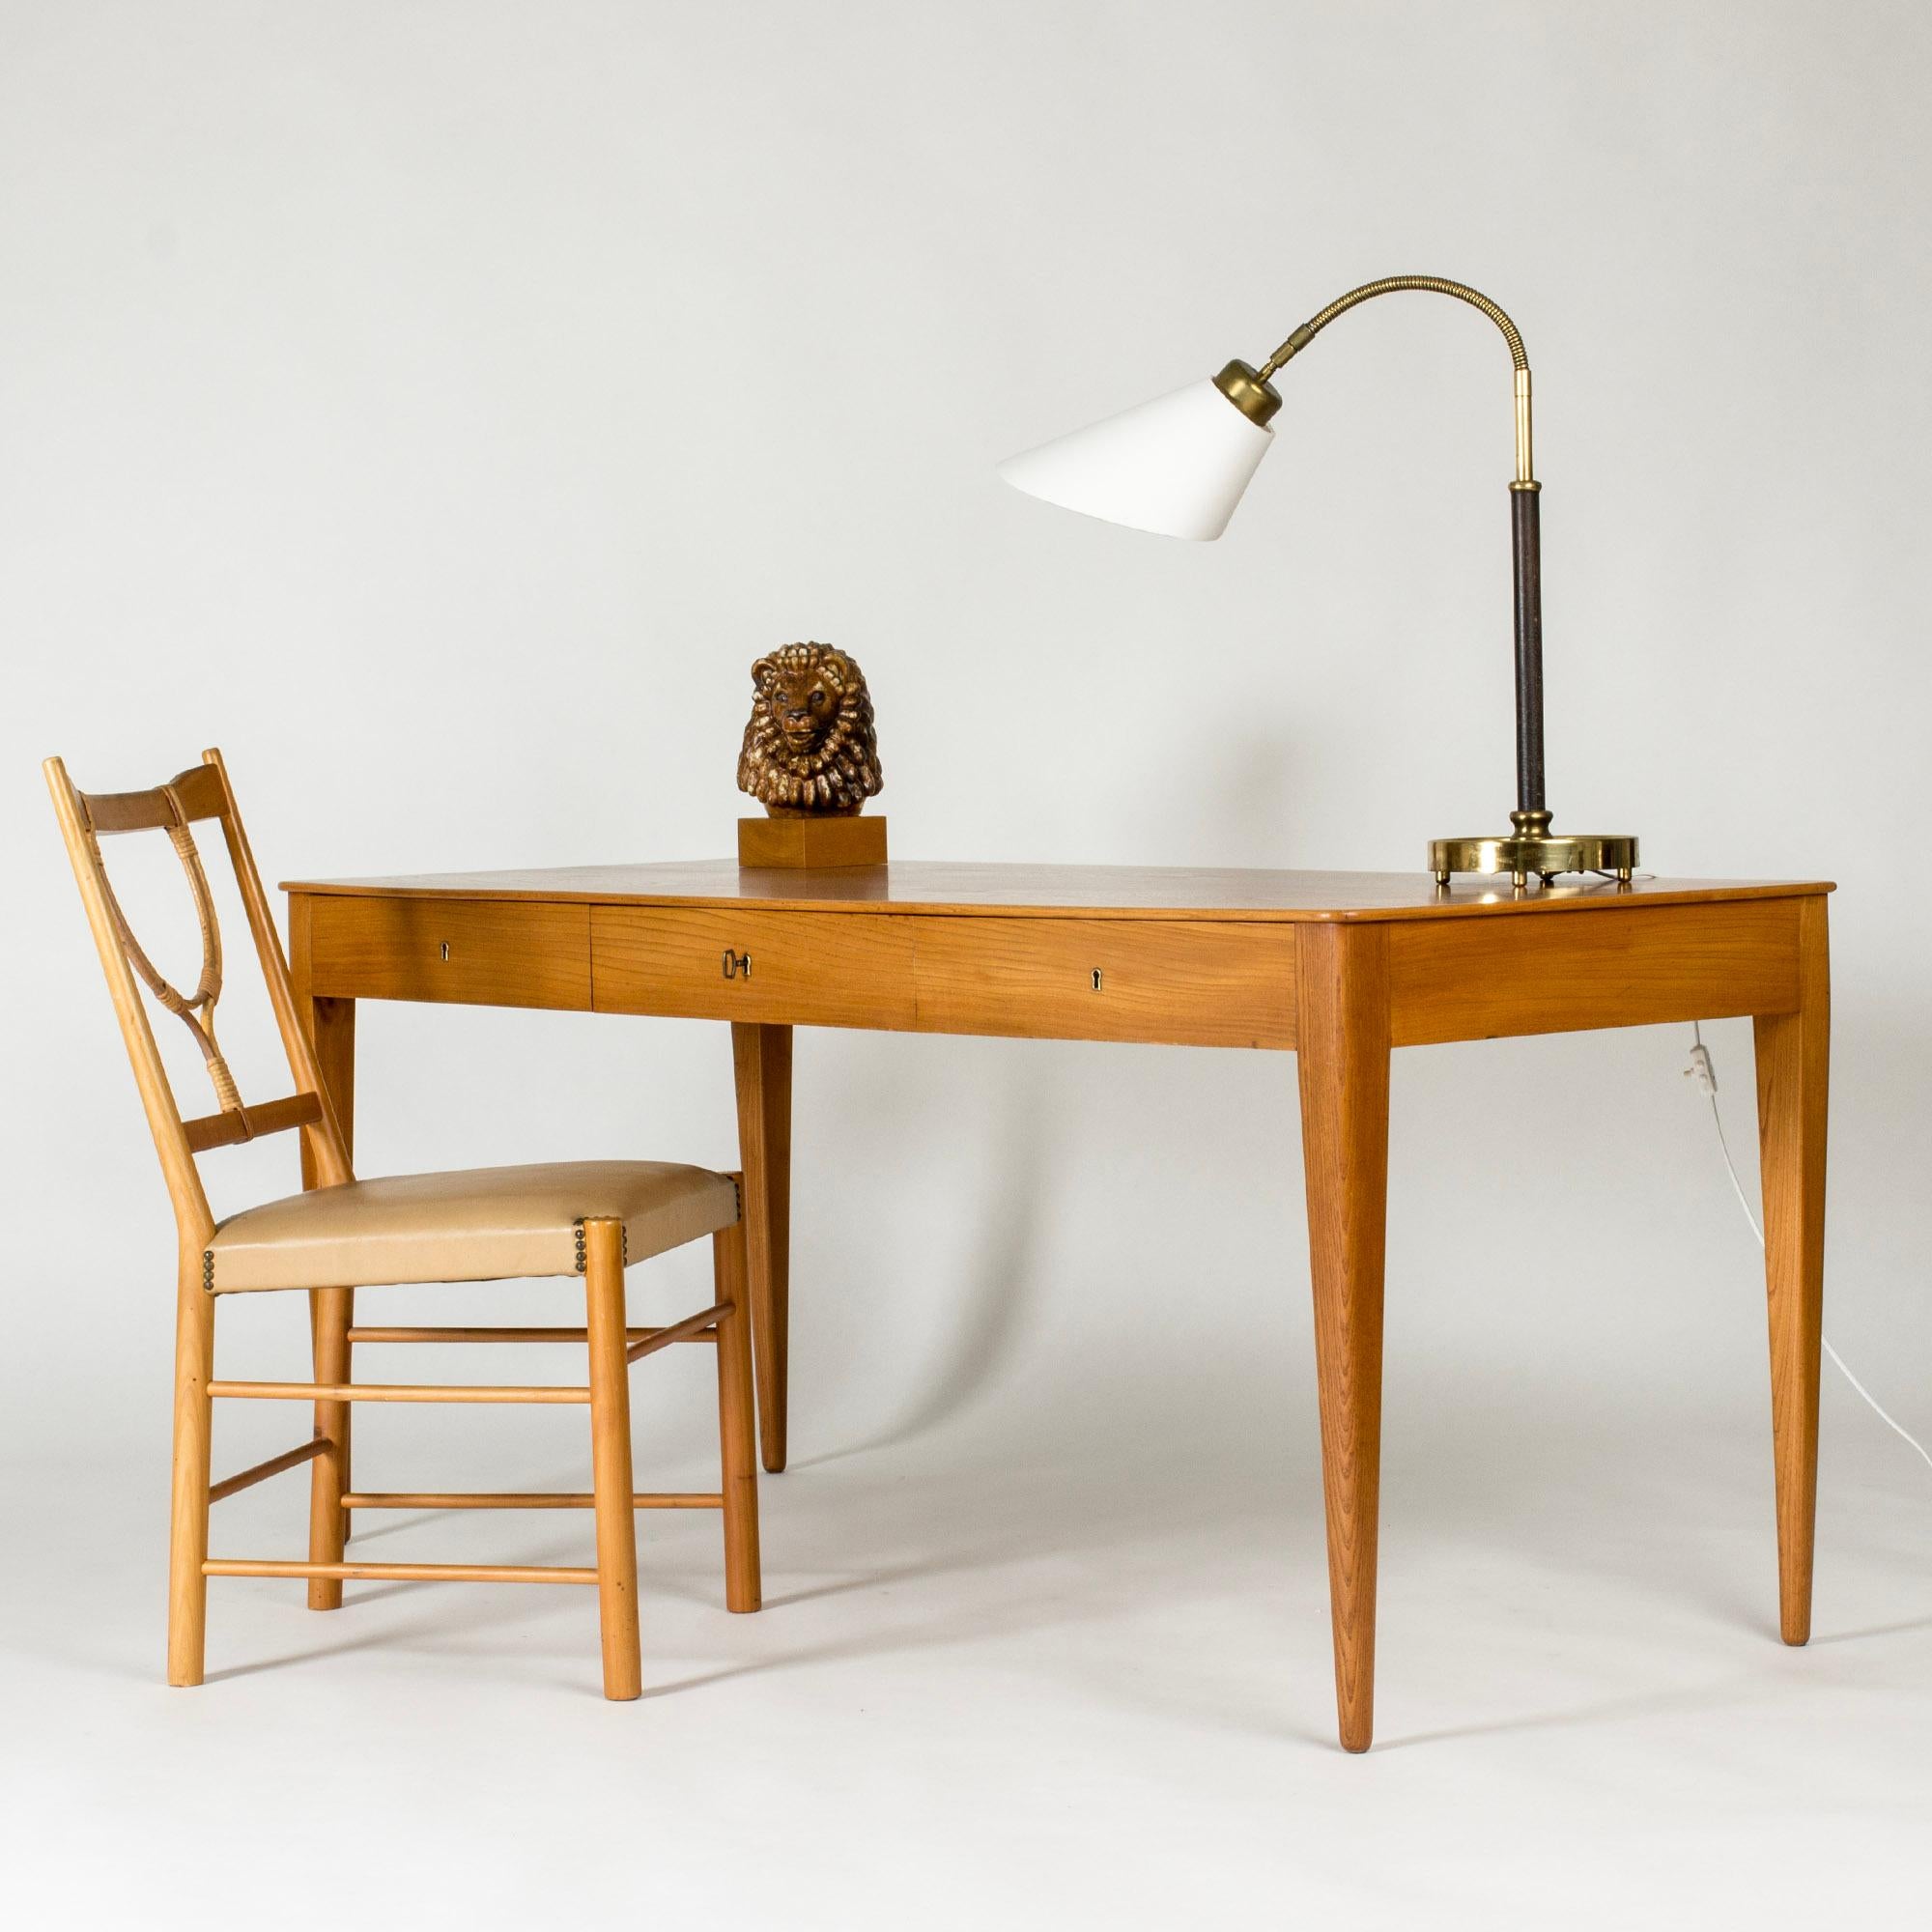 Magnifique bureau de Josef Franks, fabriqué en orme avec un grain de bois saisissant. Des lignes épurées et des formes subtilement arrondies, une pièce intemporelle.